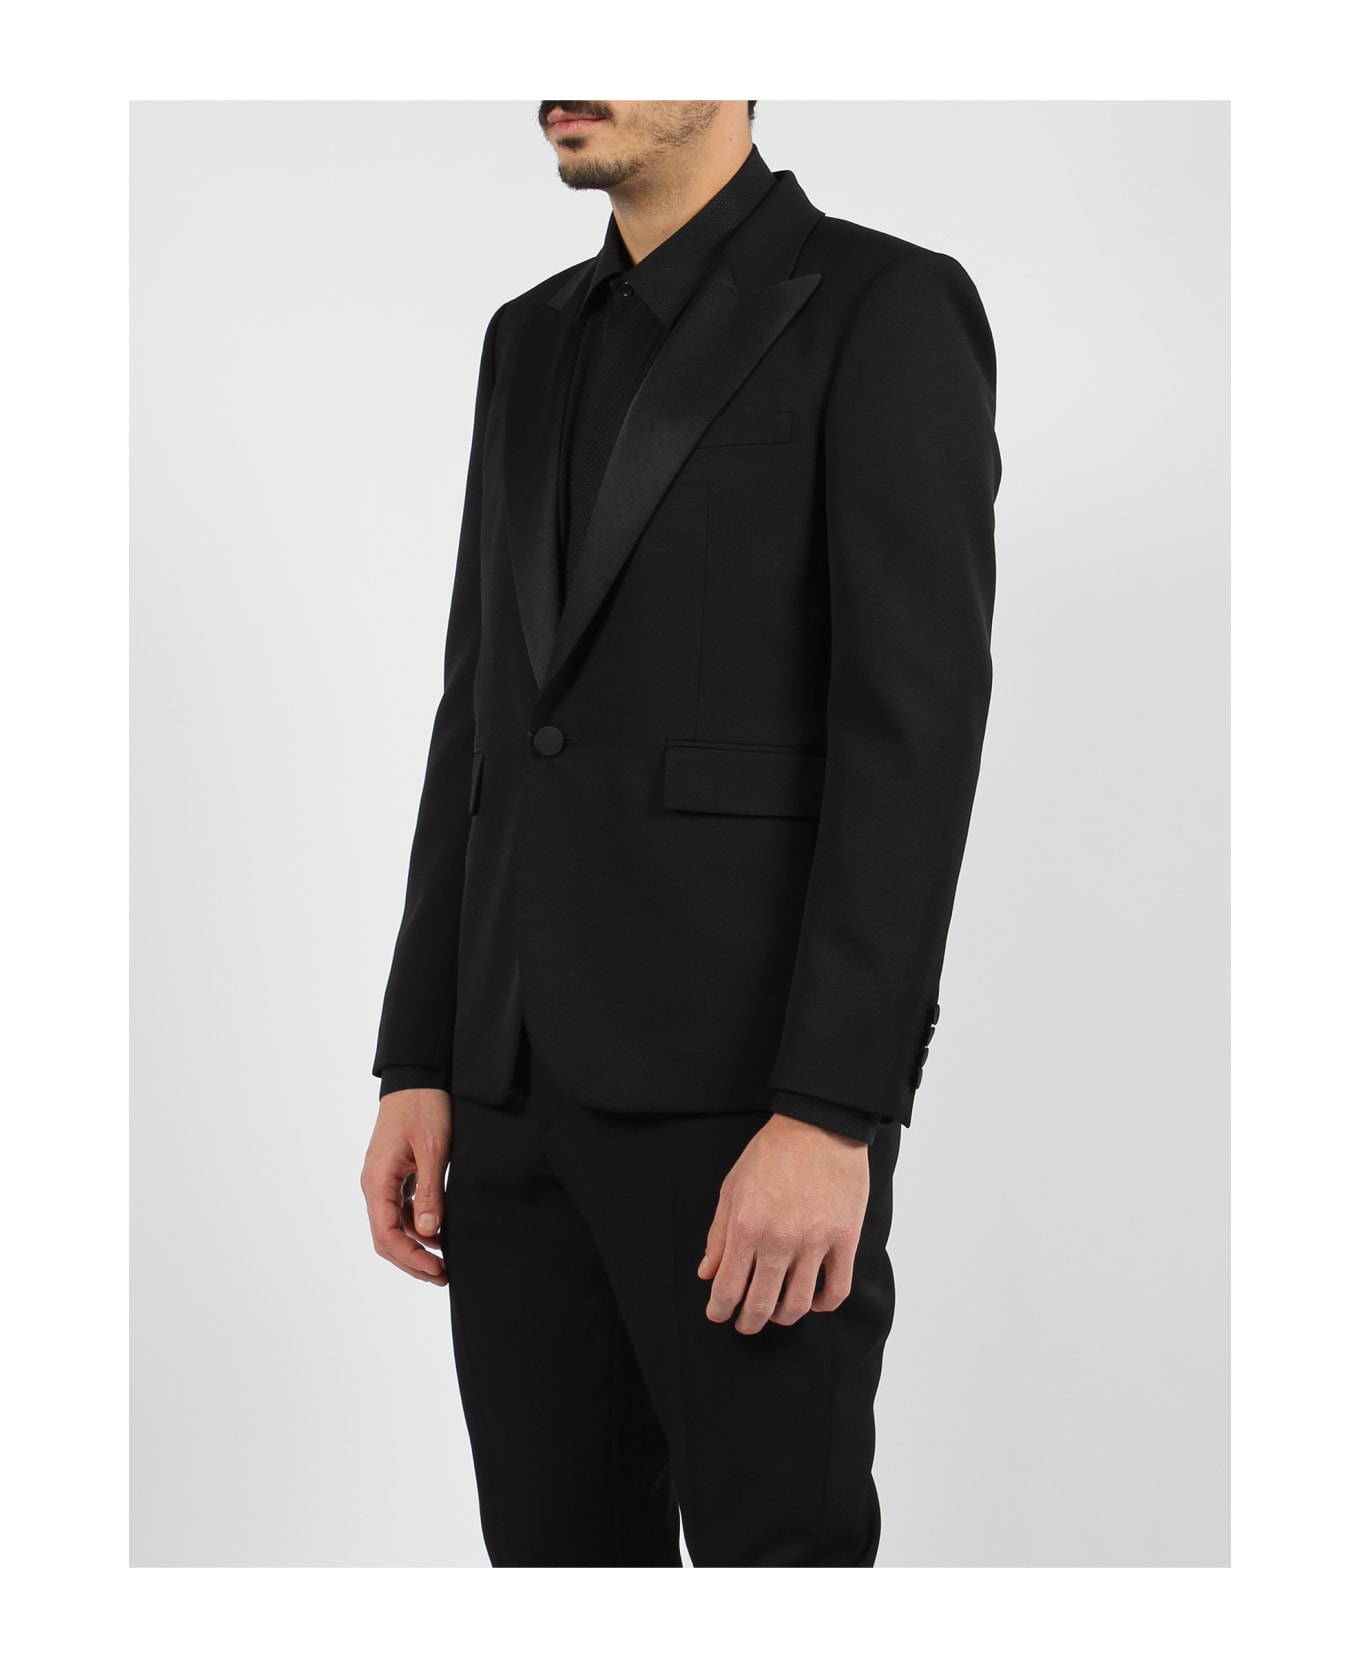 Saint Laurent Grain De Poudre Tuxedo Jacket - Black